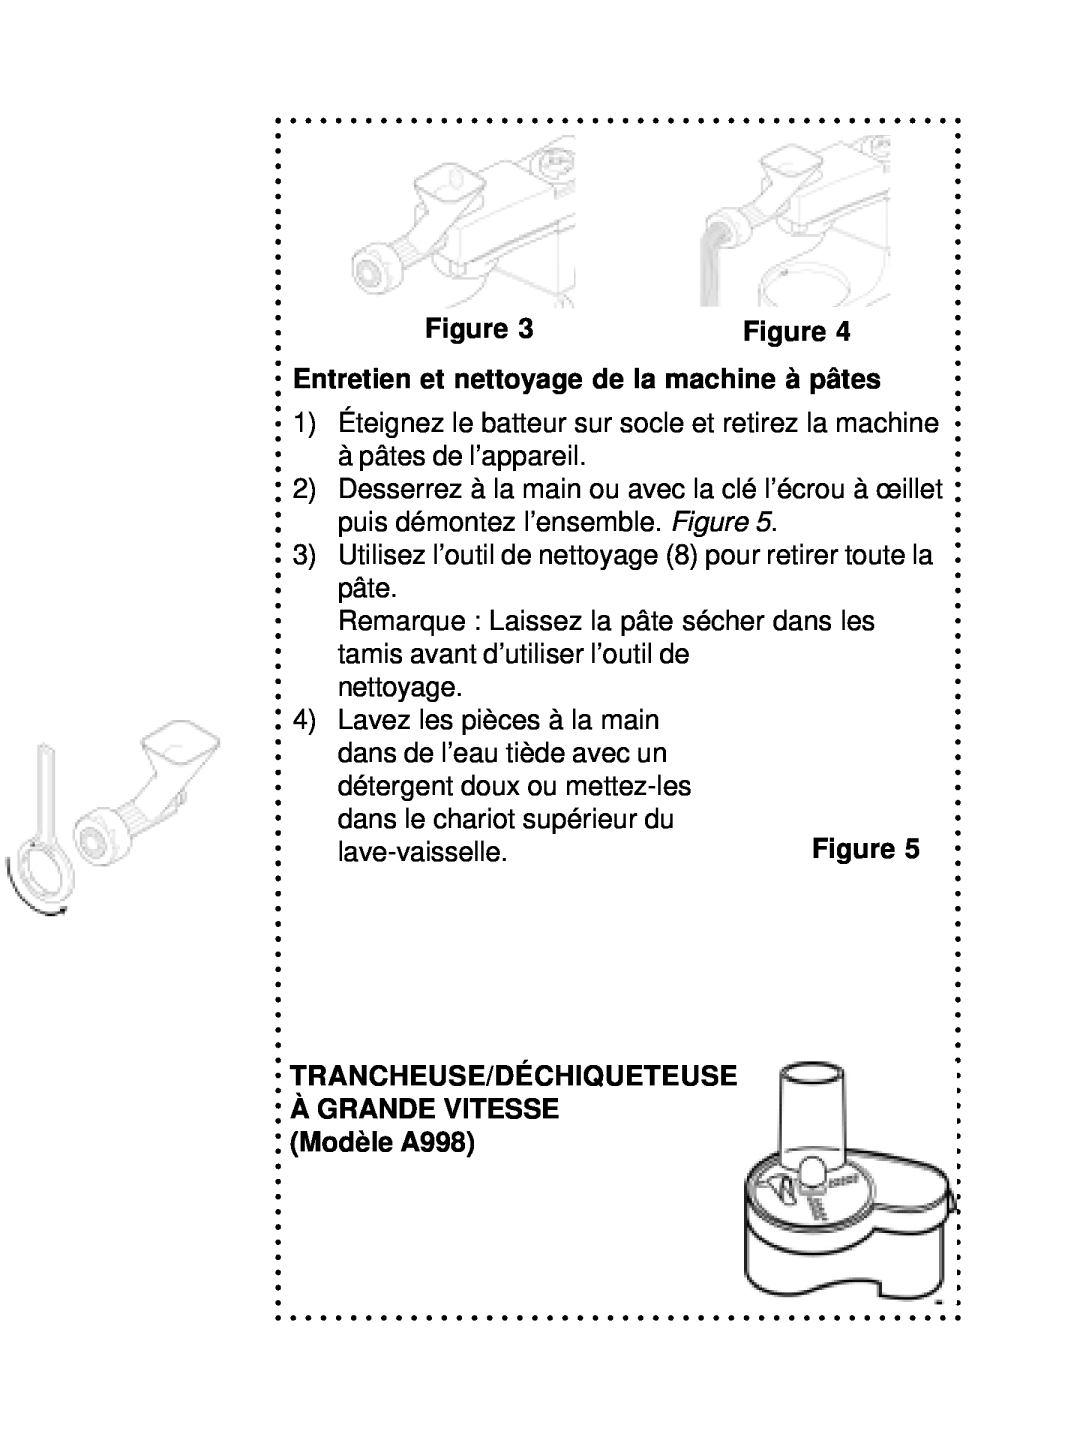 DeLonghi DSM800 Entretien et nettoyage de la machine à pâtes, Trancheuse/Déchiqueteuse, ÀGRANDE VITESSE Modèle A998 